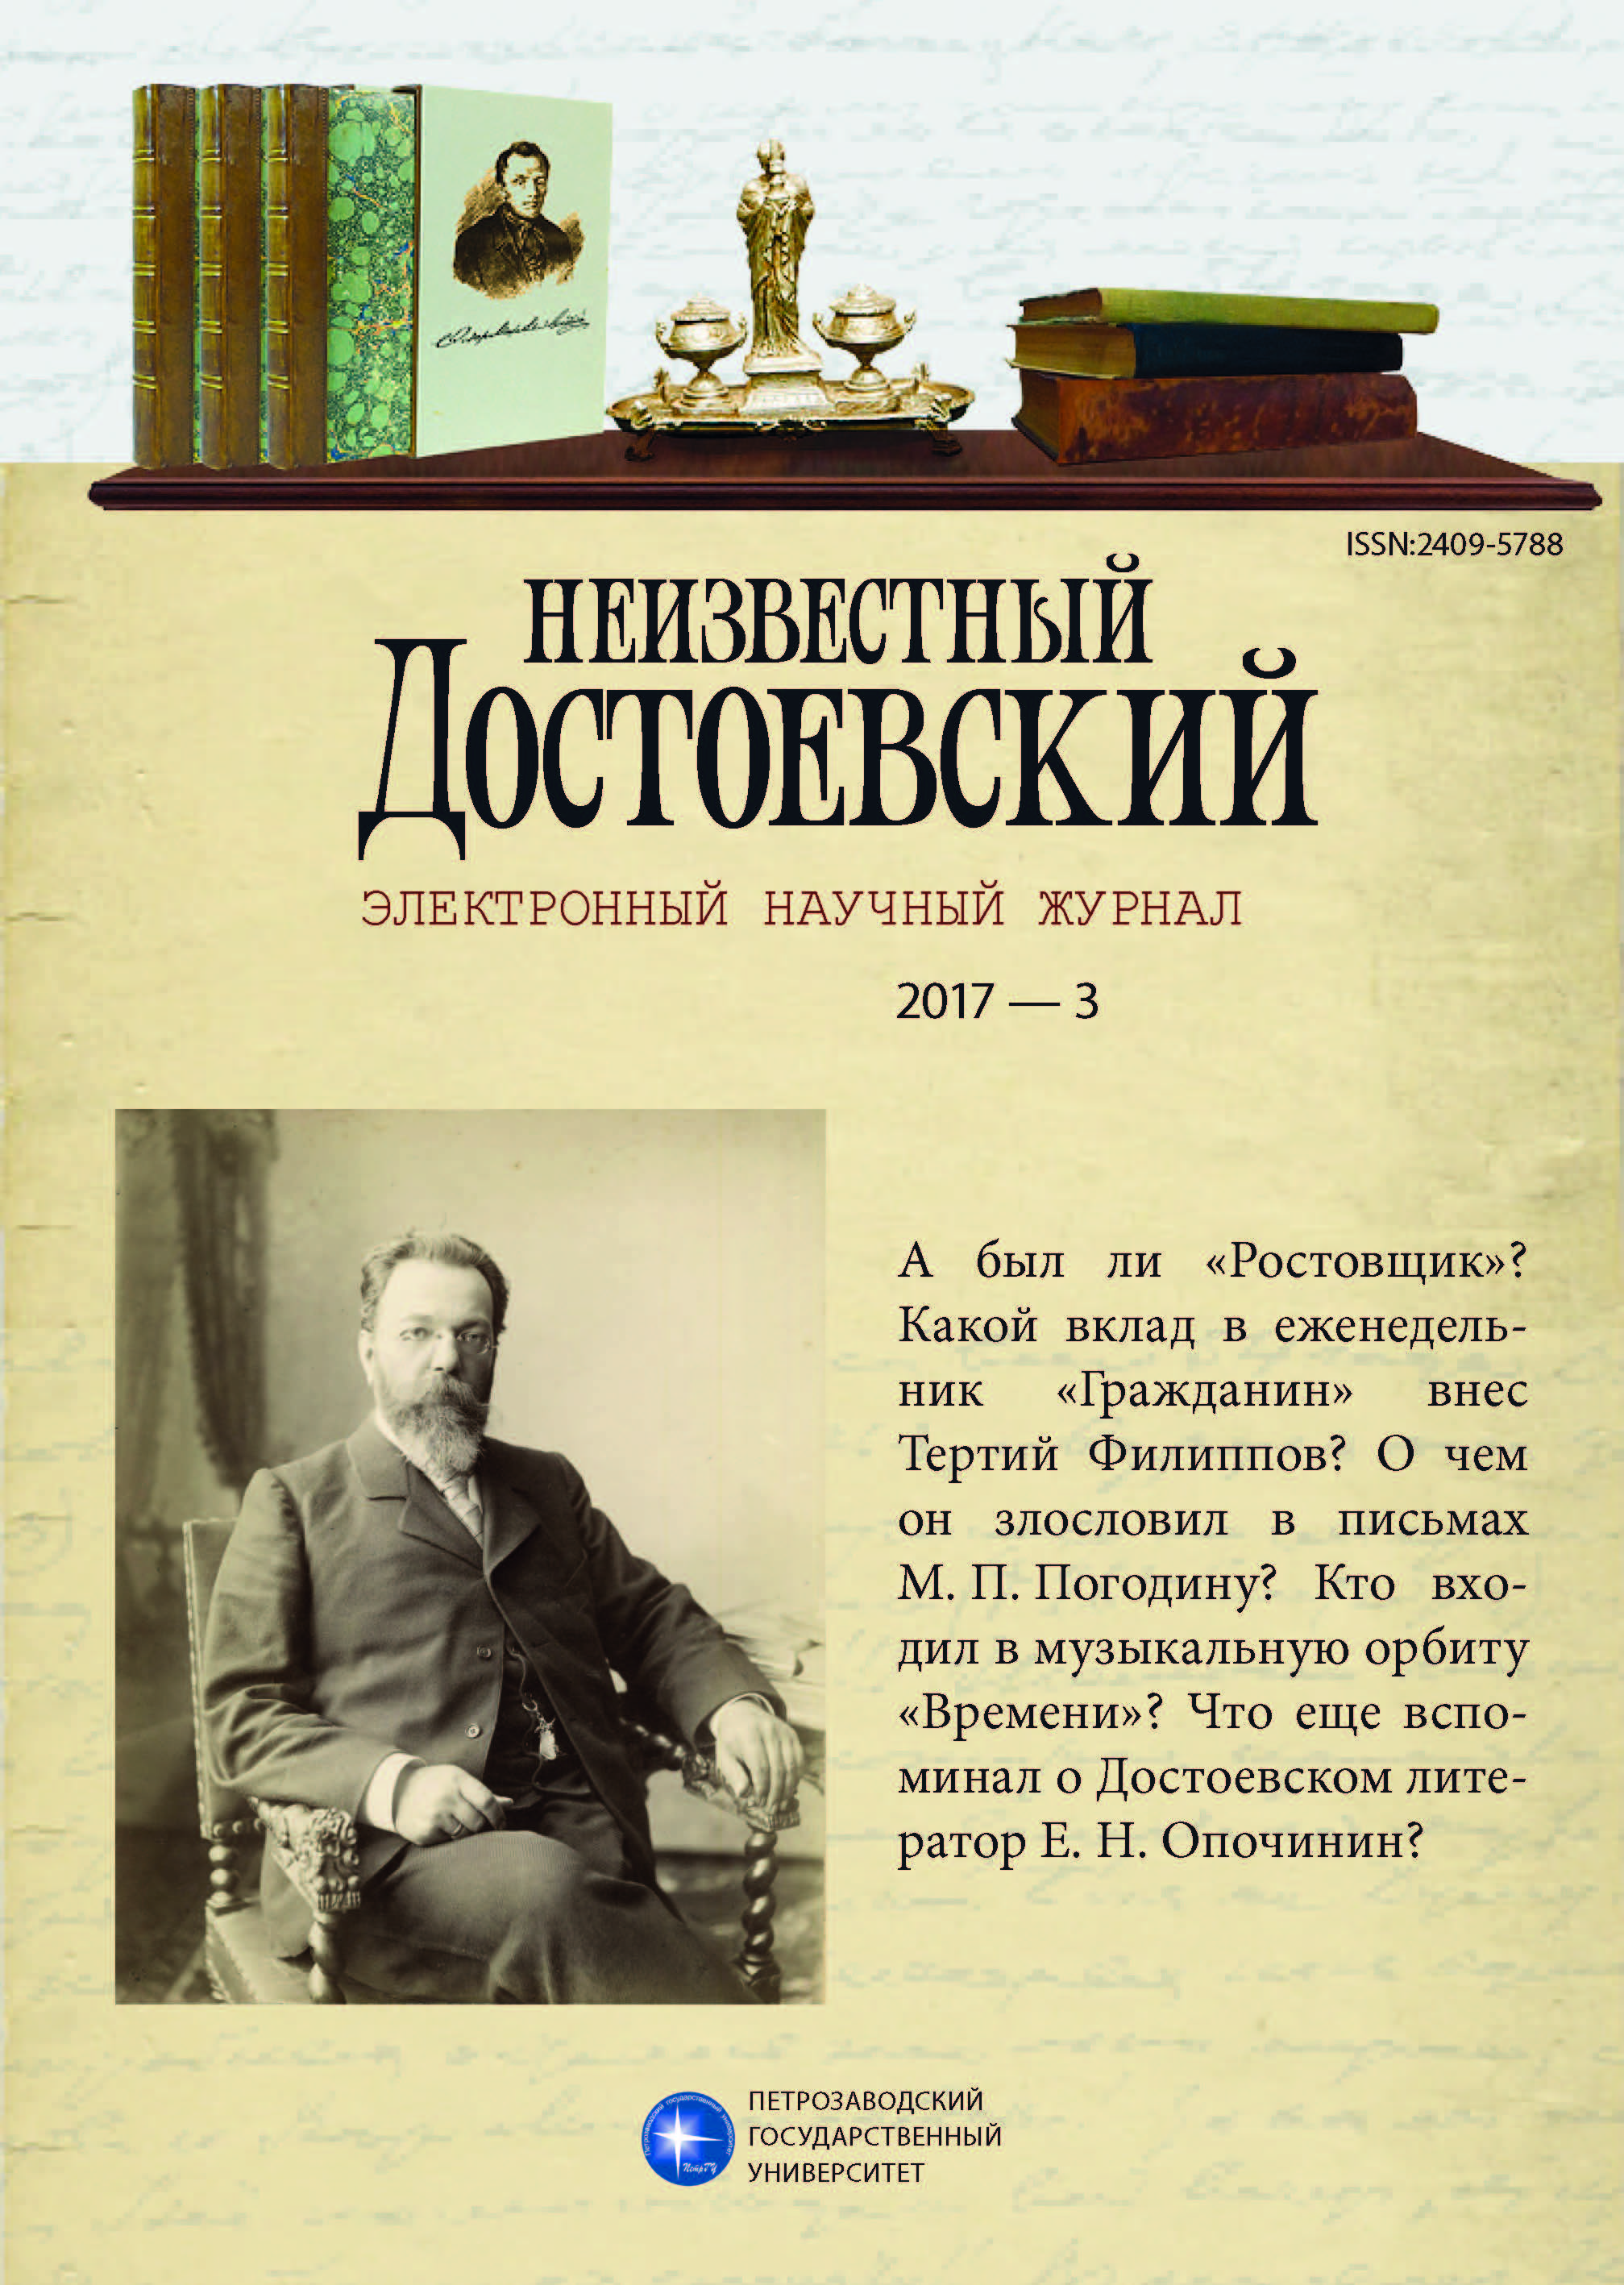 Т. И. Филиппов — сотрудник журнала «Гражданин» в 1873–1874 гг. (по архивным материалам)